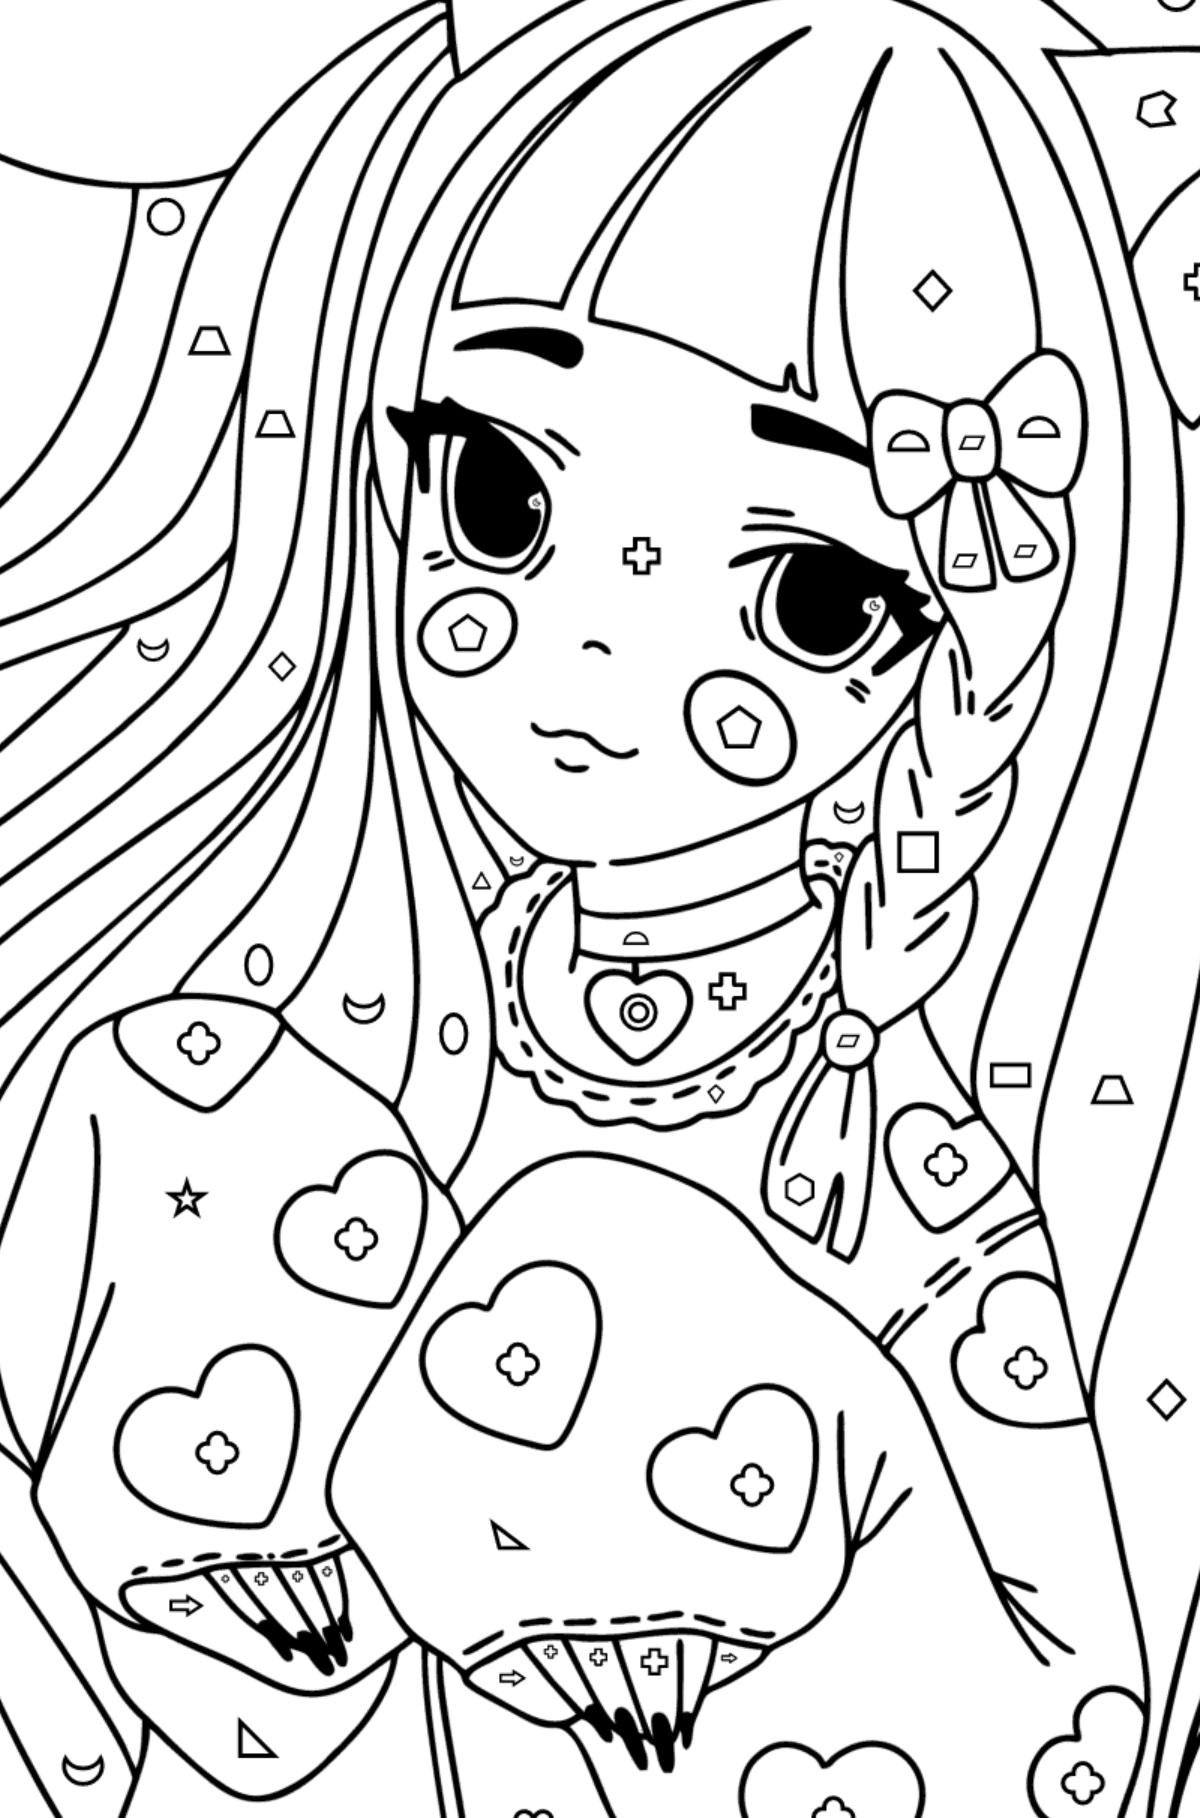 Fată anime cu urechi și labe desen de colorat - Desen de colorat după Forme Geometrice pentru copii